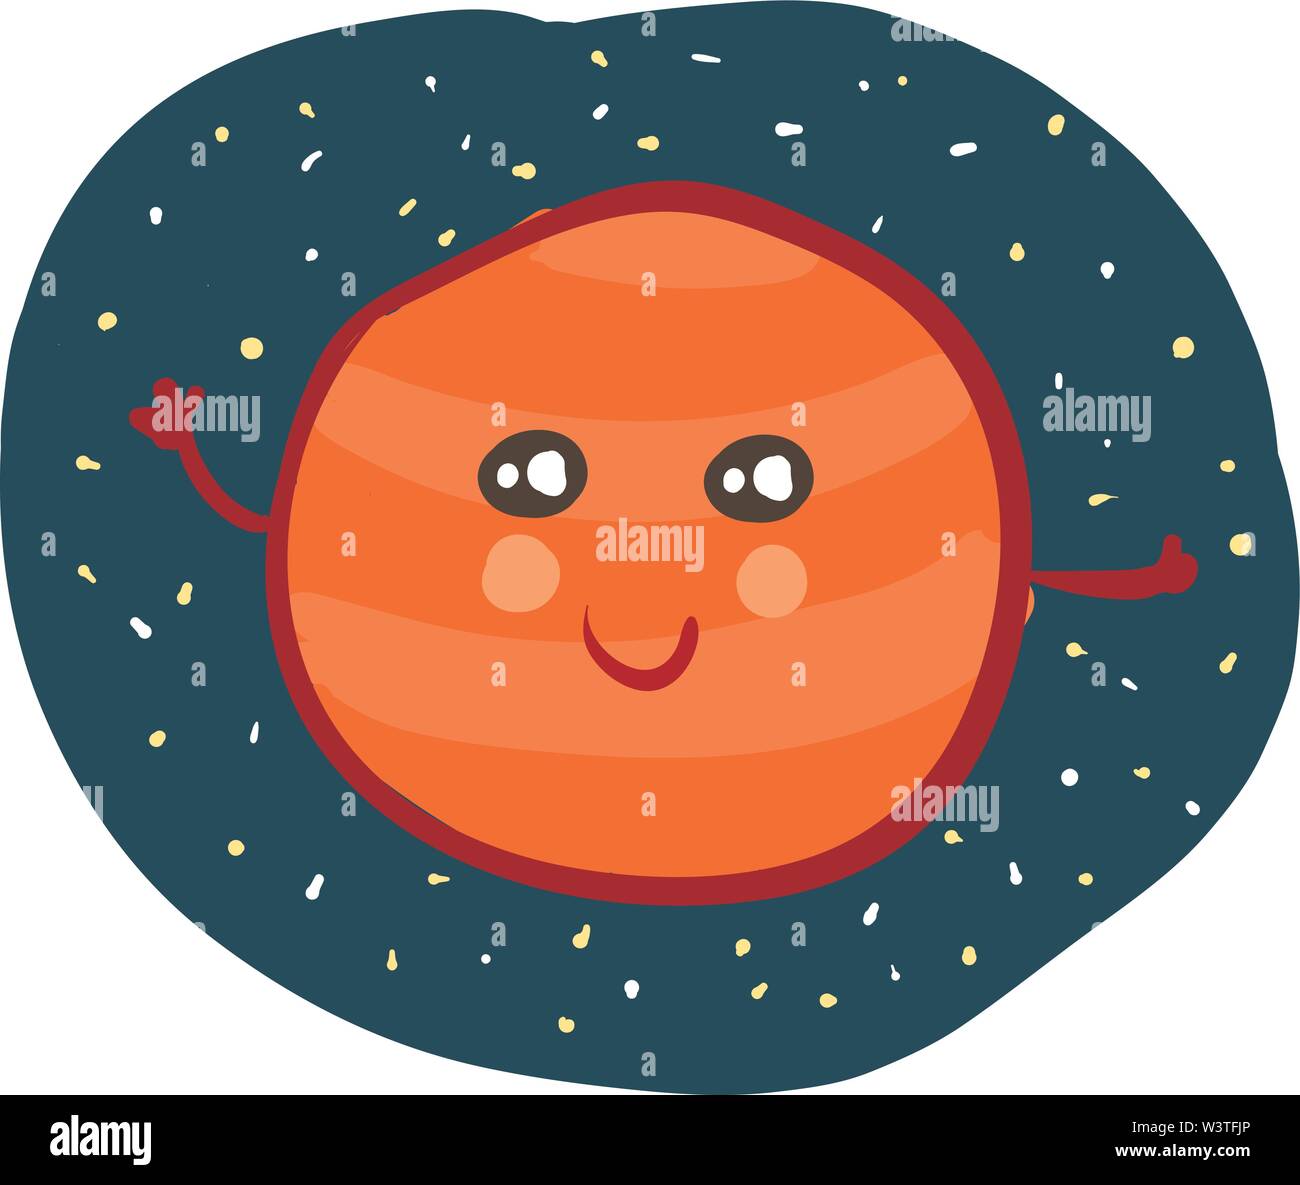 Planète mercure en couleur rouge avec beaucoup de stars dans l'atmosphère, Scénario, dessin en couleur ou d'illustration. Illustration de Vecteur